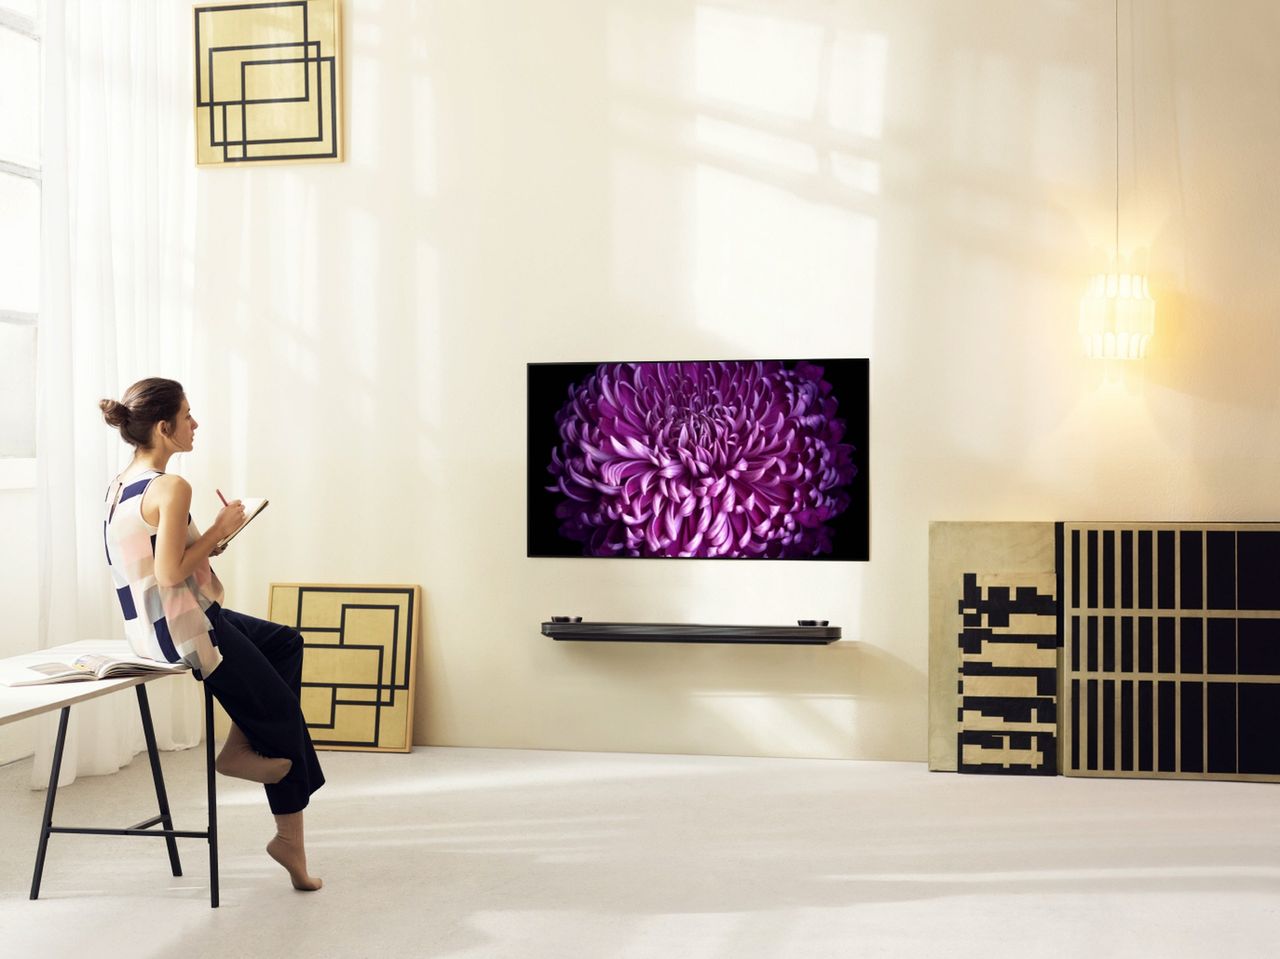 Telewizory LG SIGNATURE OLED wkraczają w nowy wymiar wzornictwa #CES2016 #prasówka